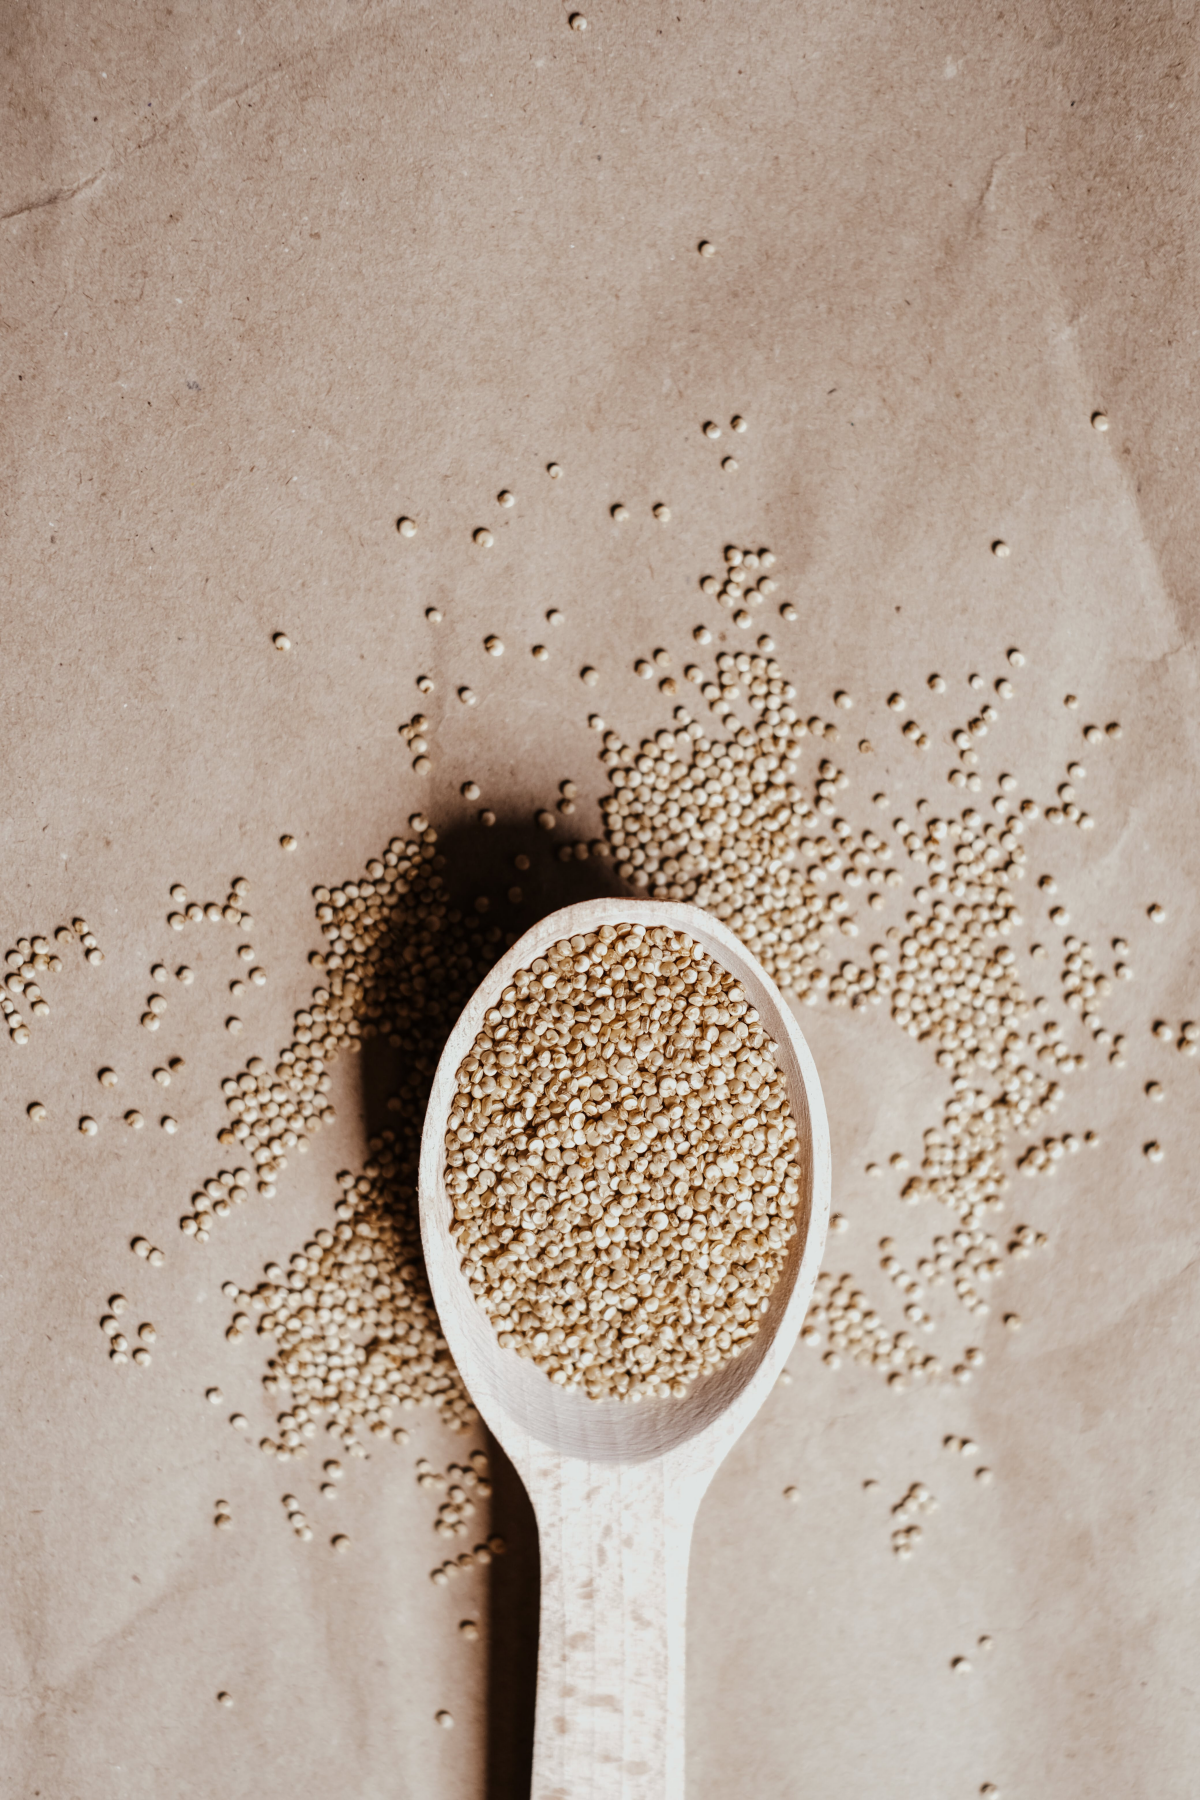 quinoa seeds in wooden spoon